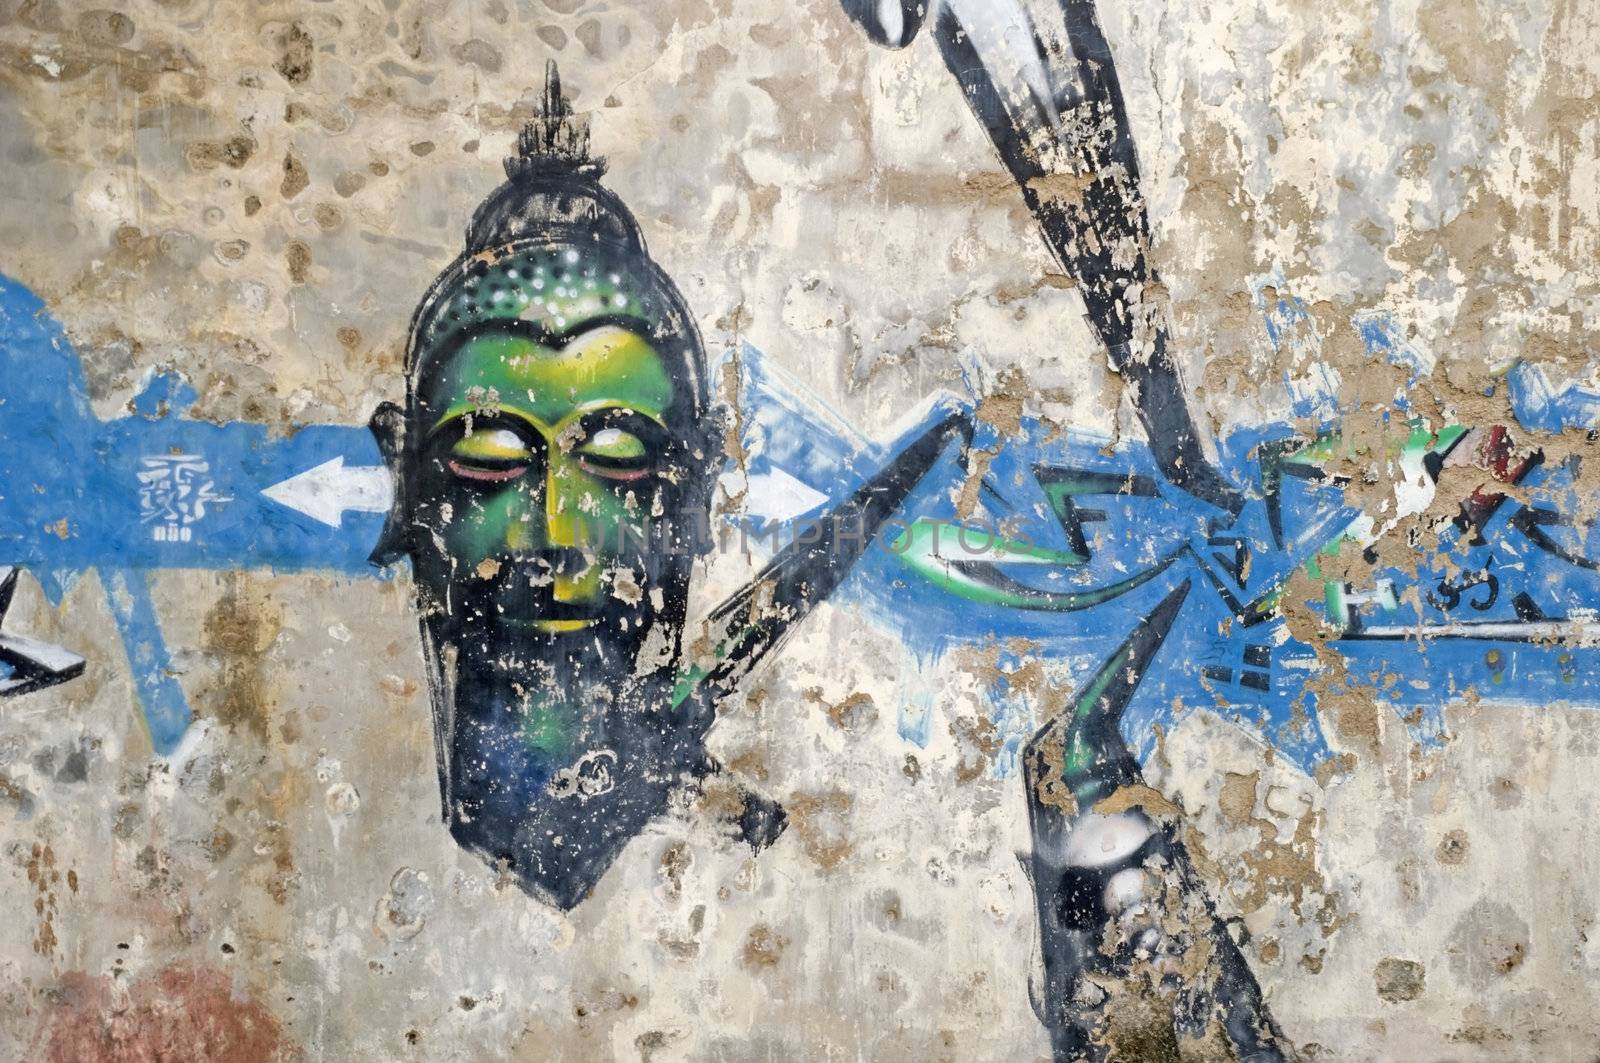 Buddha Graffiti by ilgitano